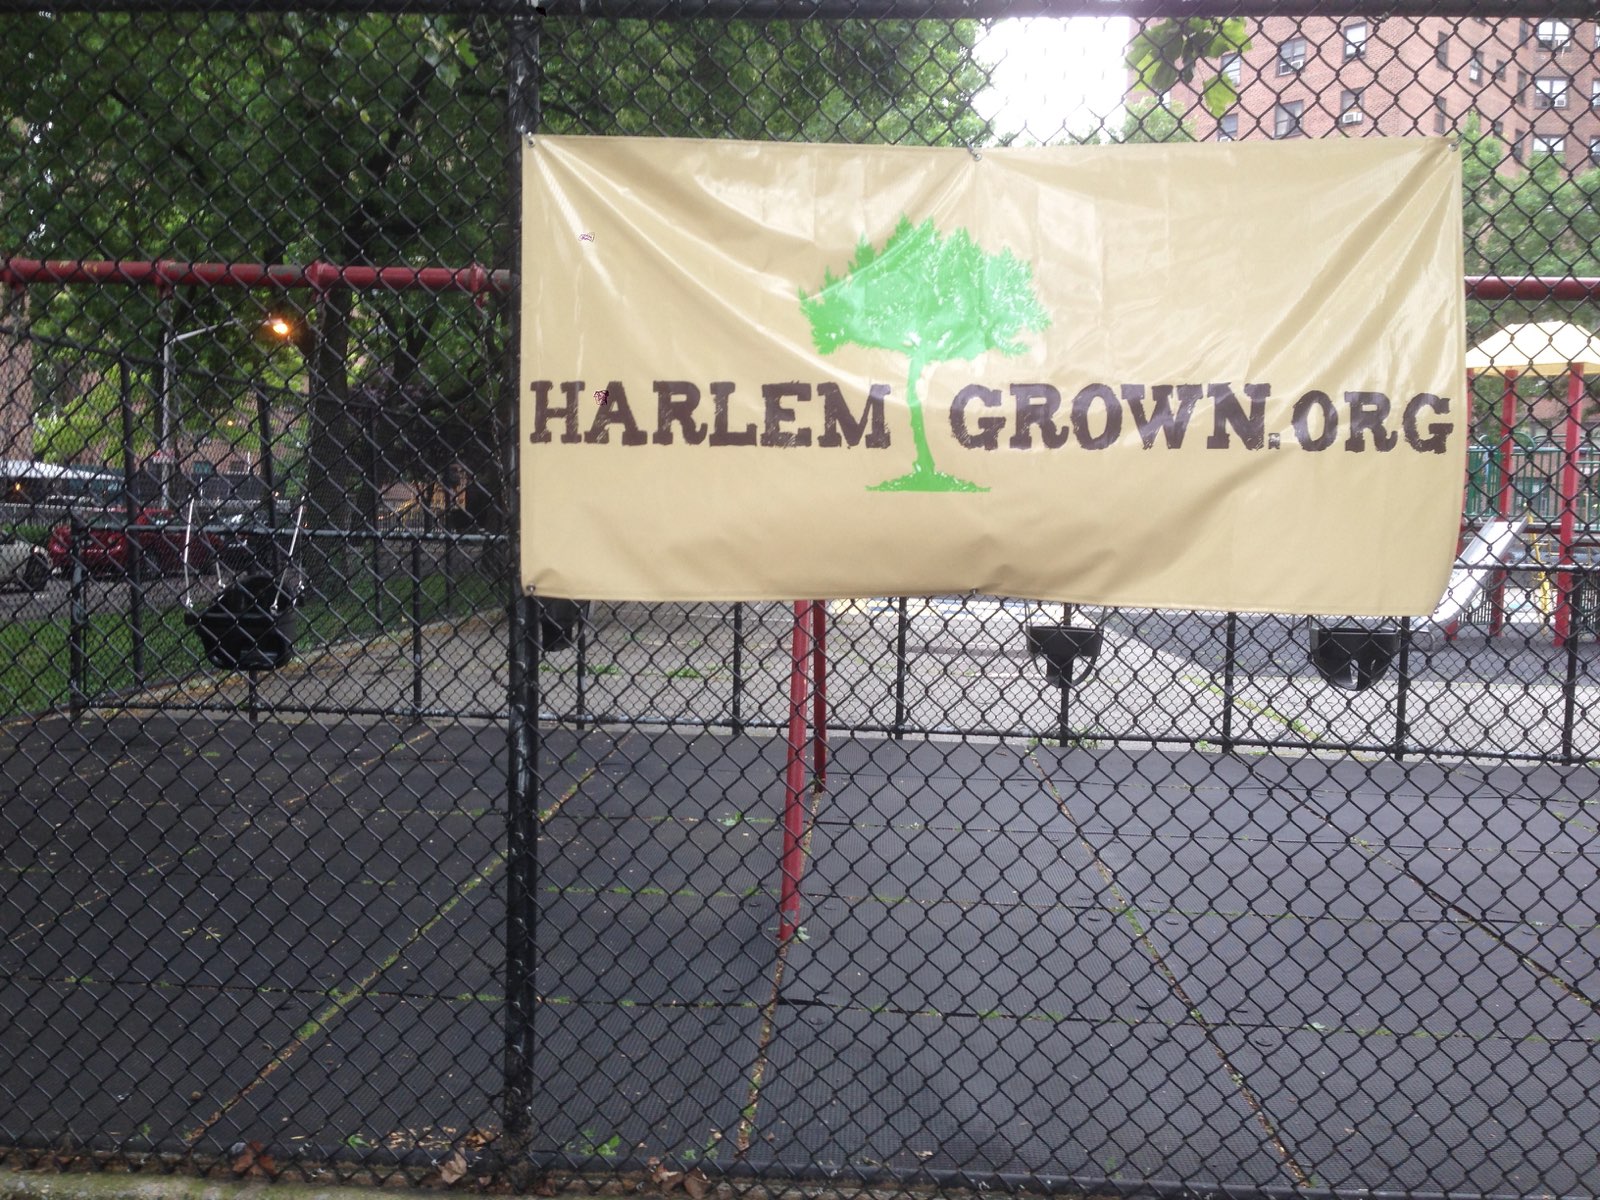 Harlem Grown